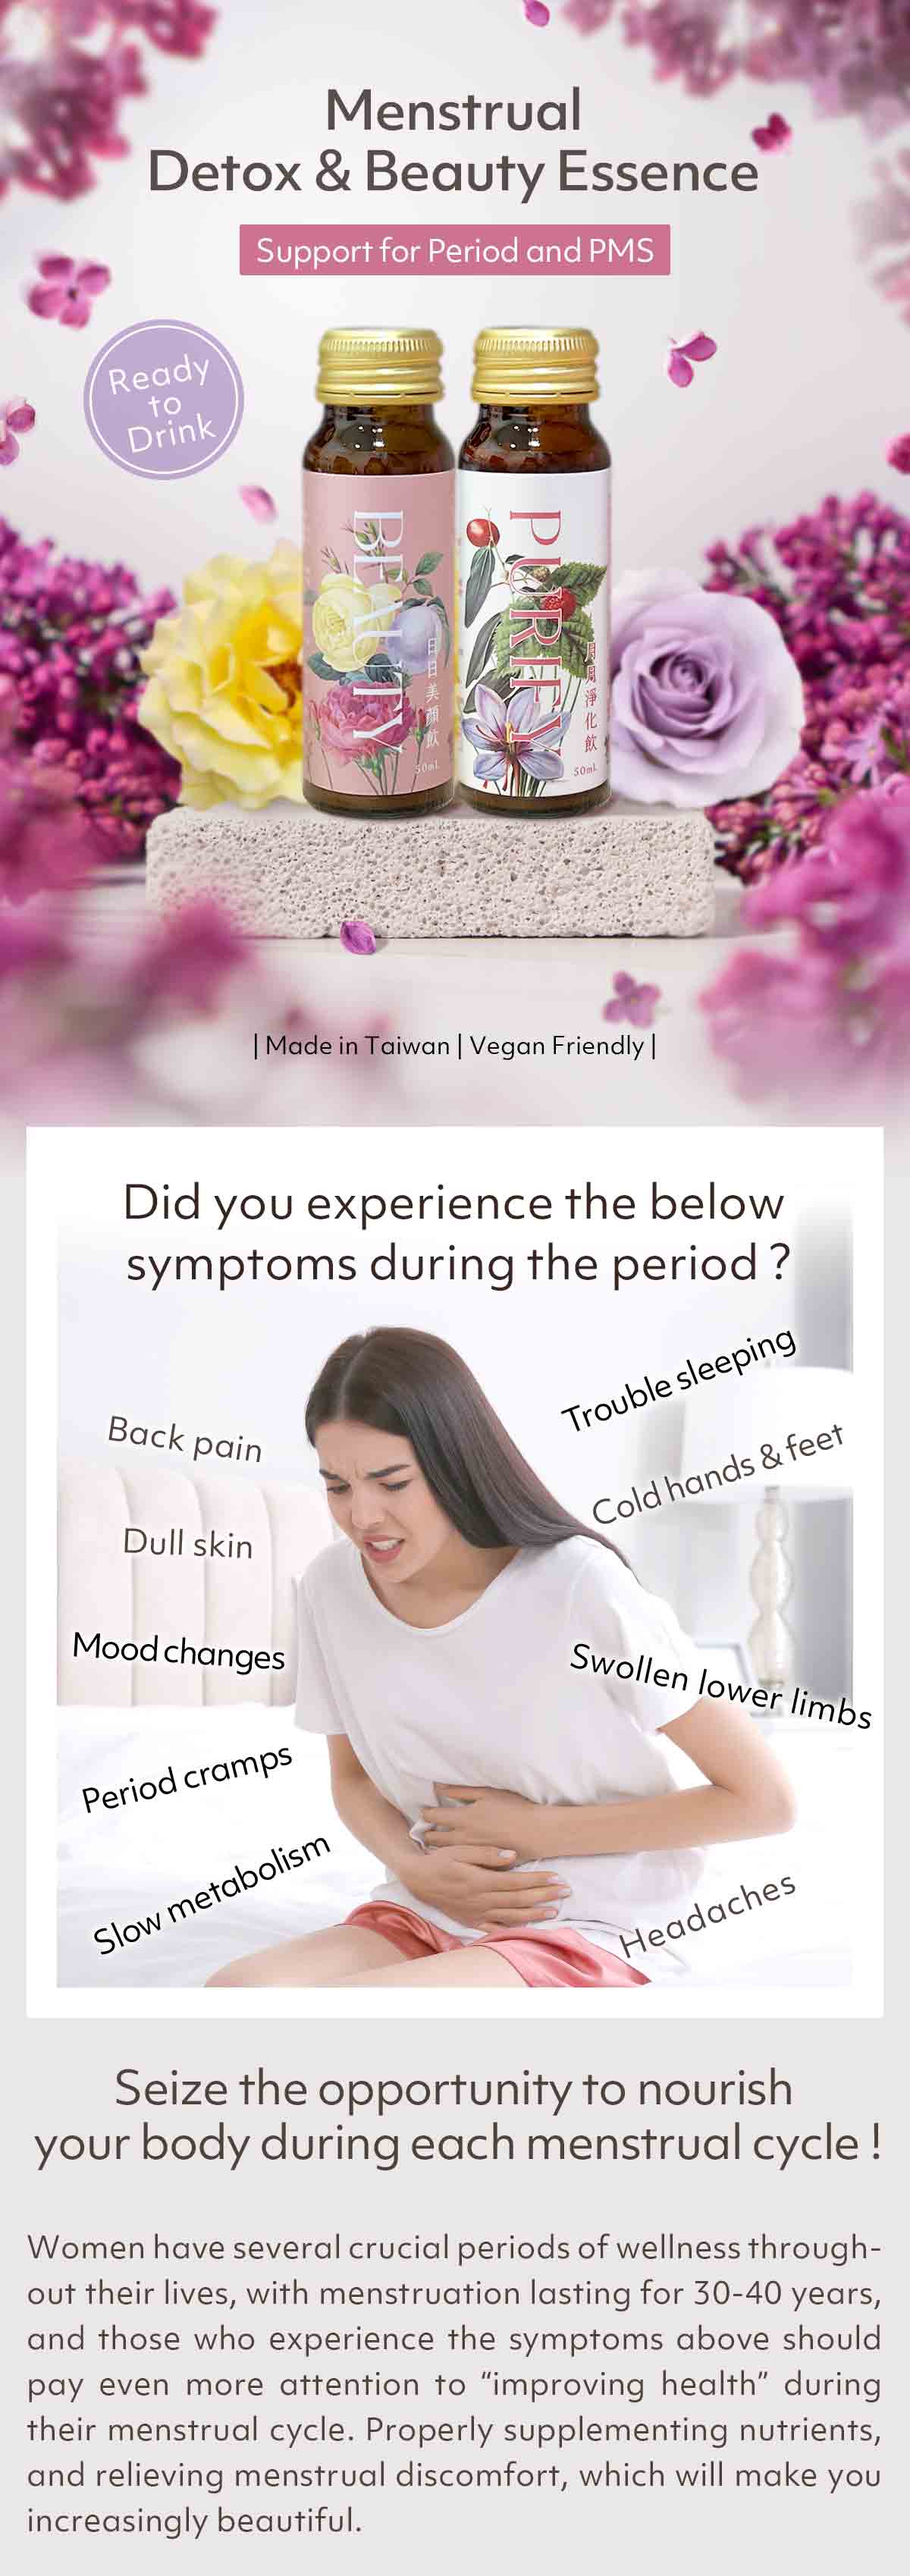 Menstrual Detox & Beauty Essence